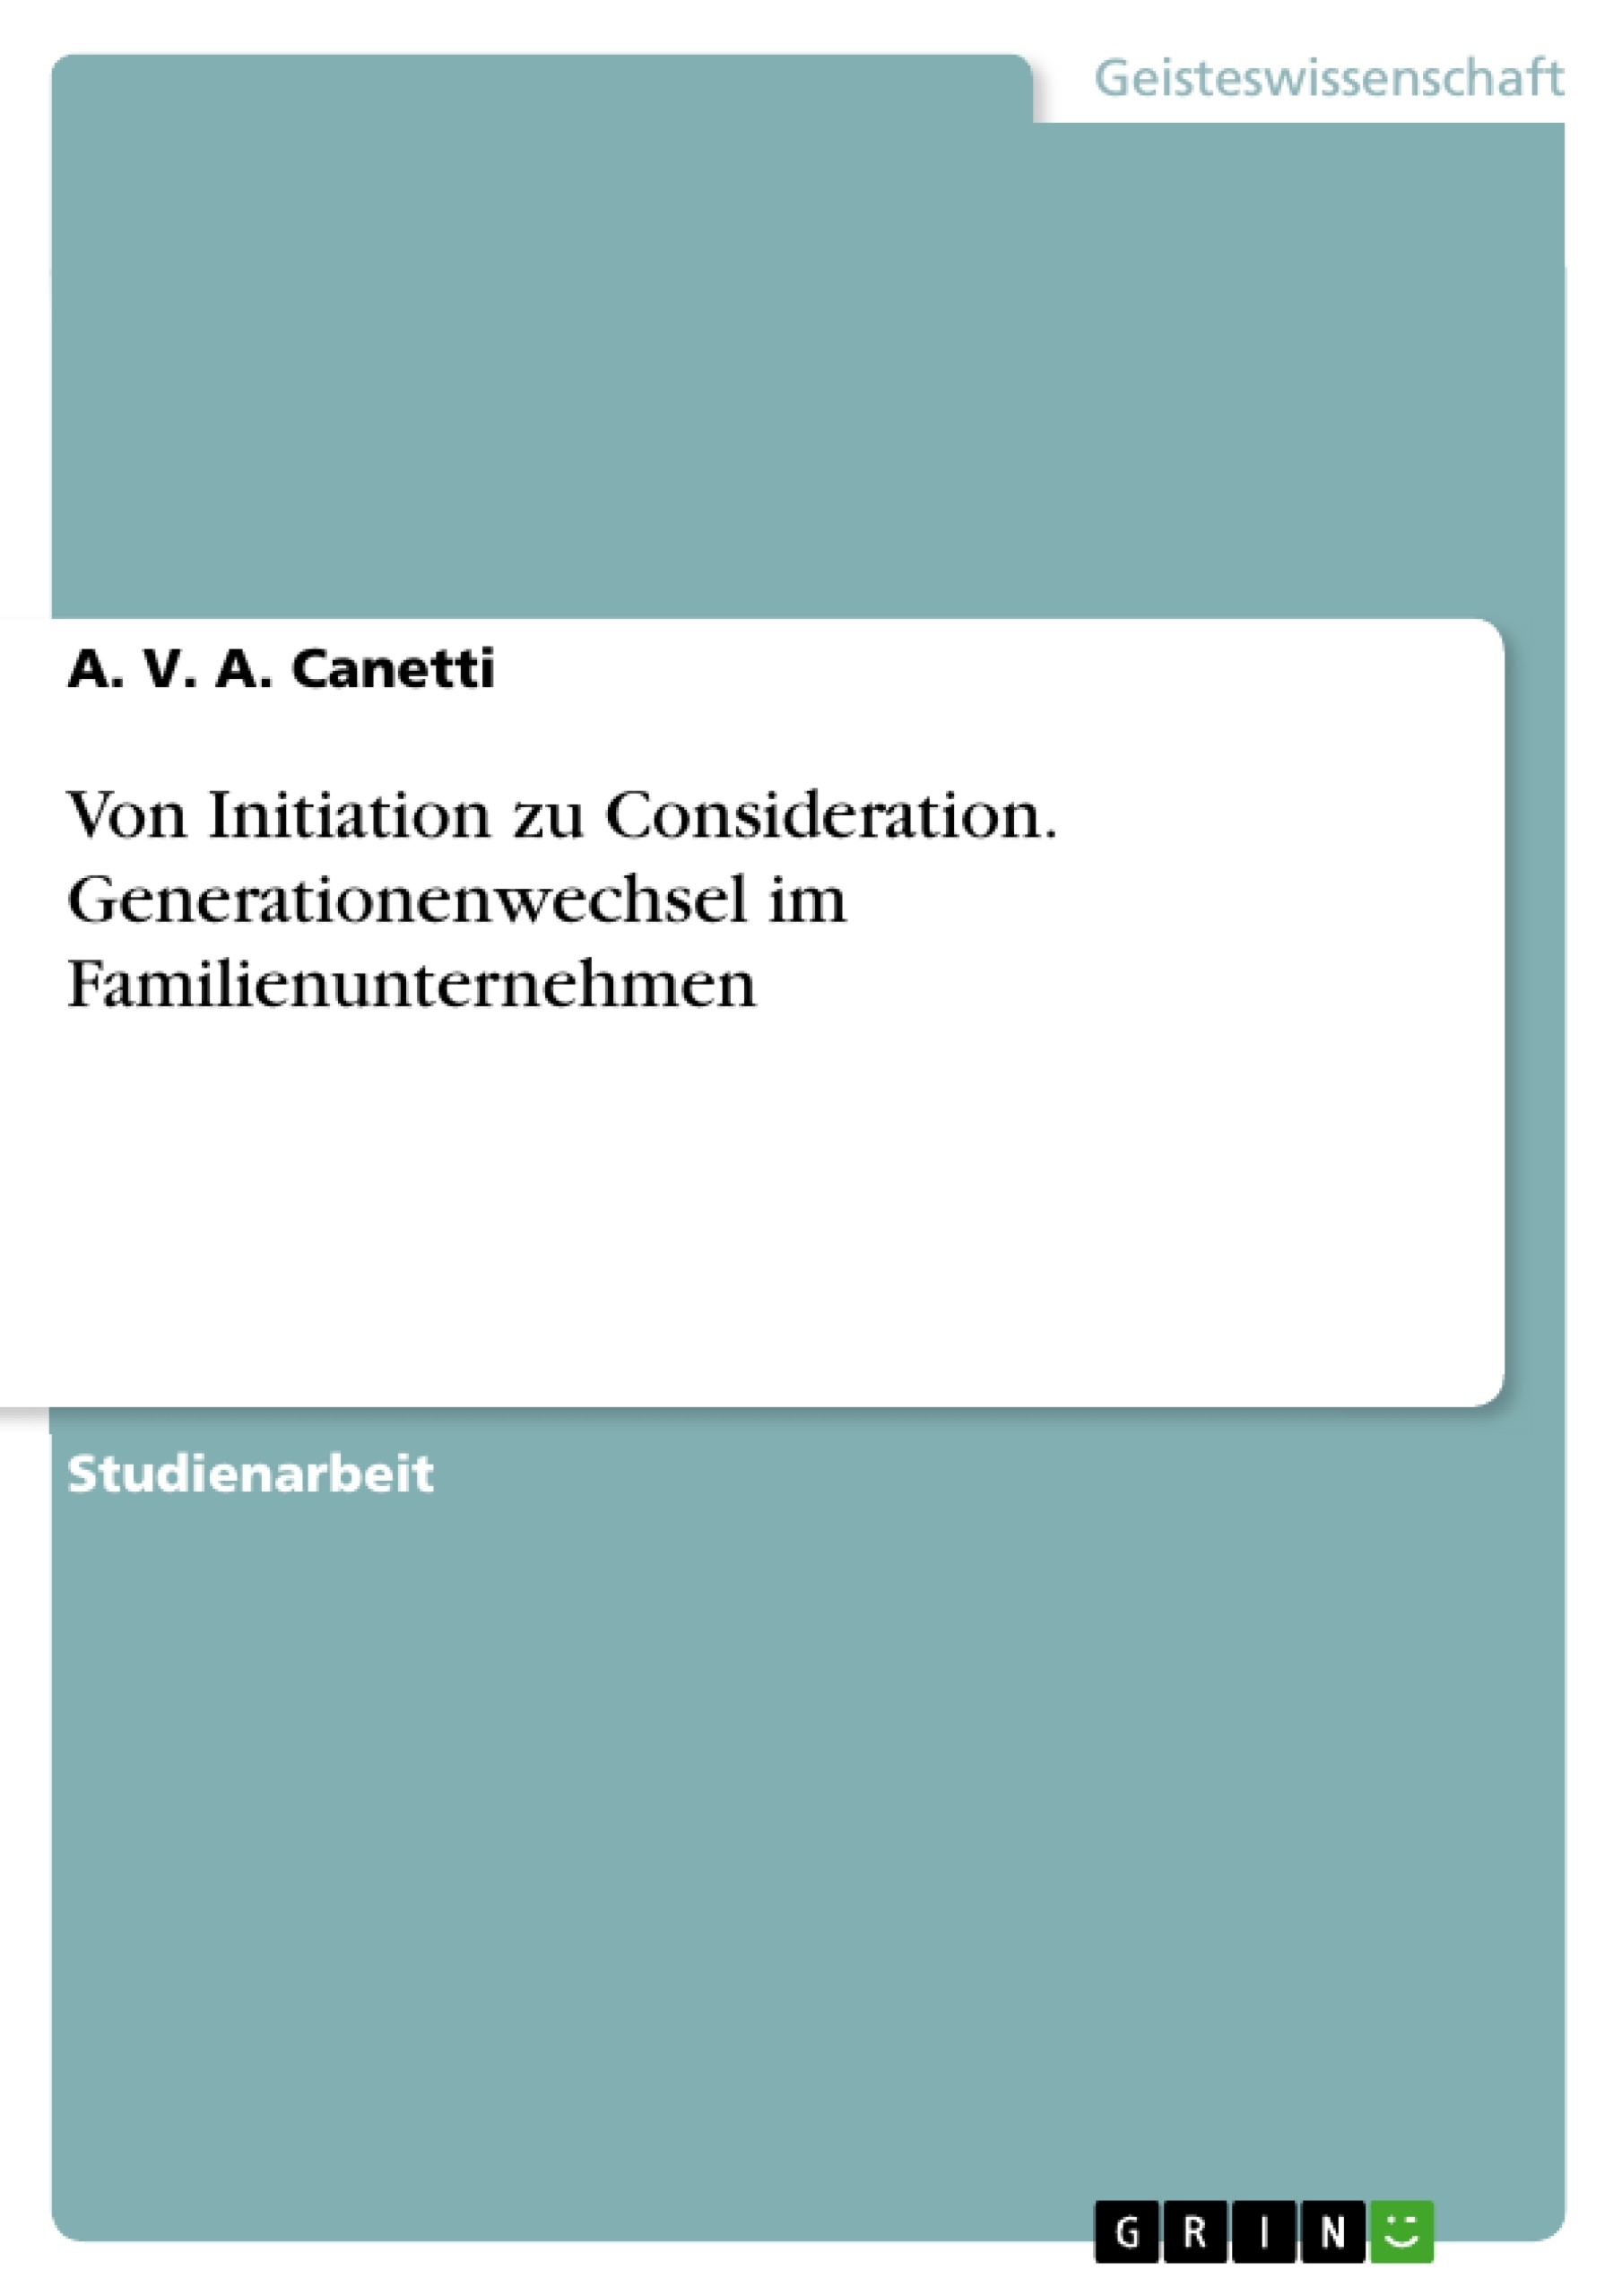 Título: Von Initiation zu Consideration. Generationenwechsel im Familienunternehmen